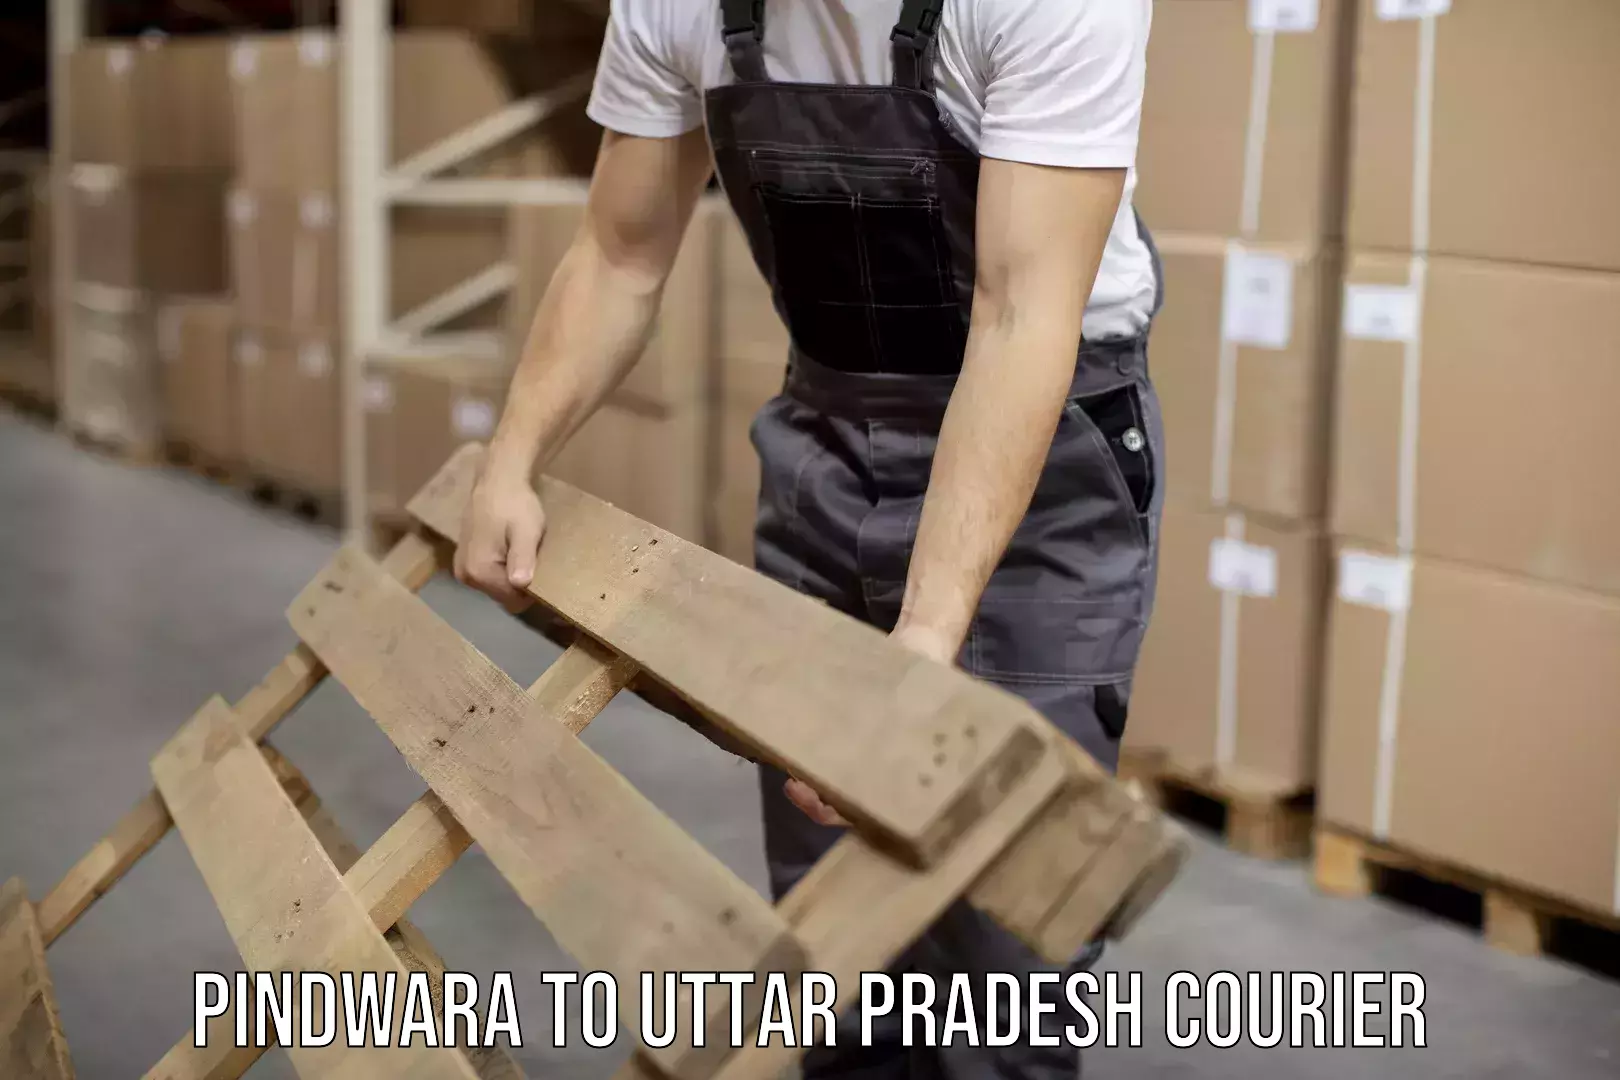 Next-generation courier services Pindwara to Uttar Pradesh